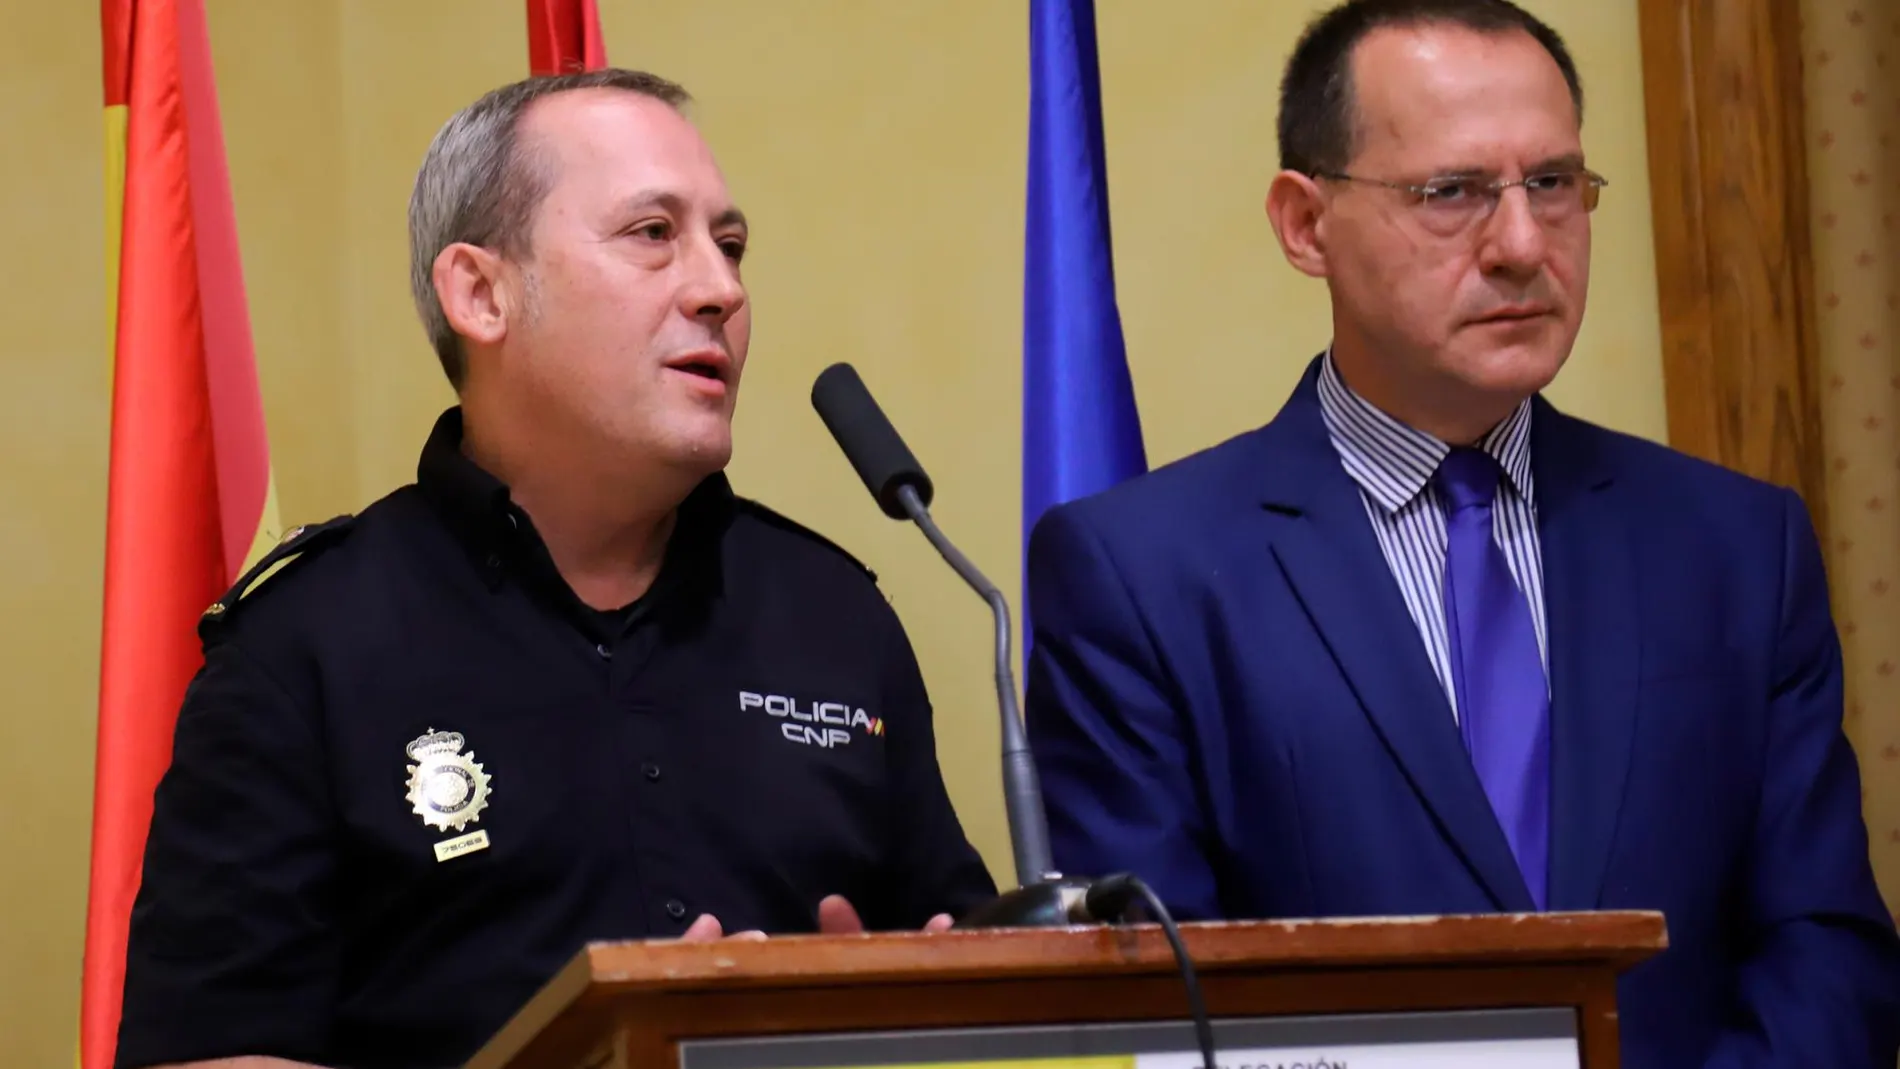 El subdelegado del Gobierno, Ángel Blanco y Guillermo Vara, Jefe Accidental de la Comisaría de Policía de Zamora, han informado de nuevos detalles sobre el presunto asesinato ocurrido en Zamora